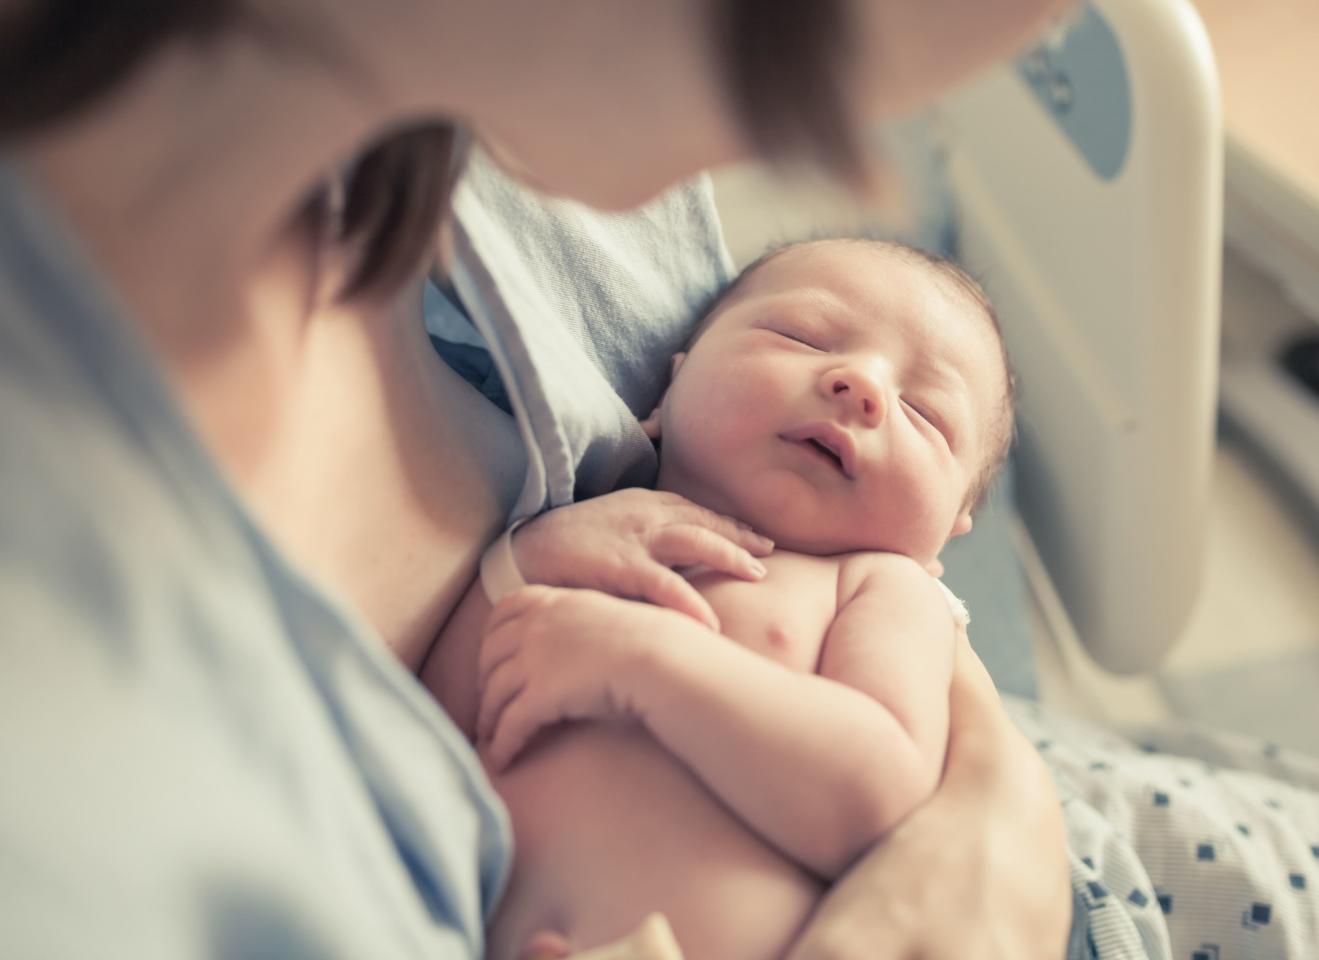 ЛДПР предлагает увеличить пособие при рождении ребенка